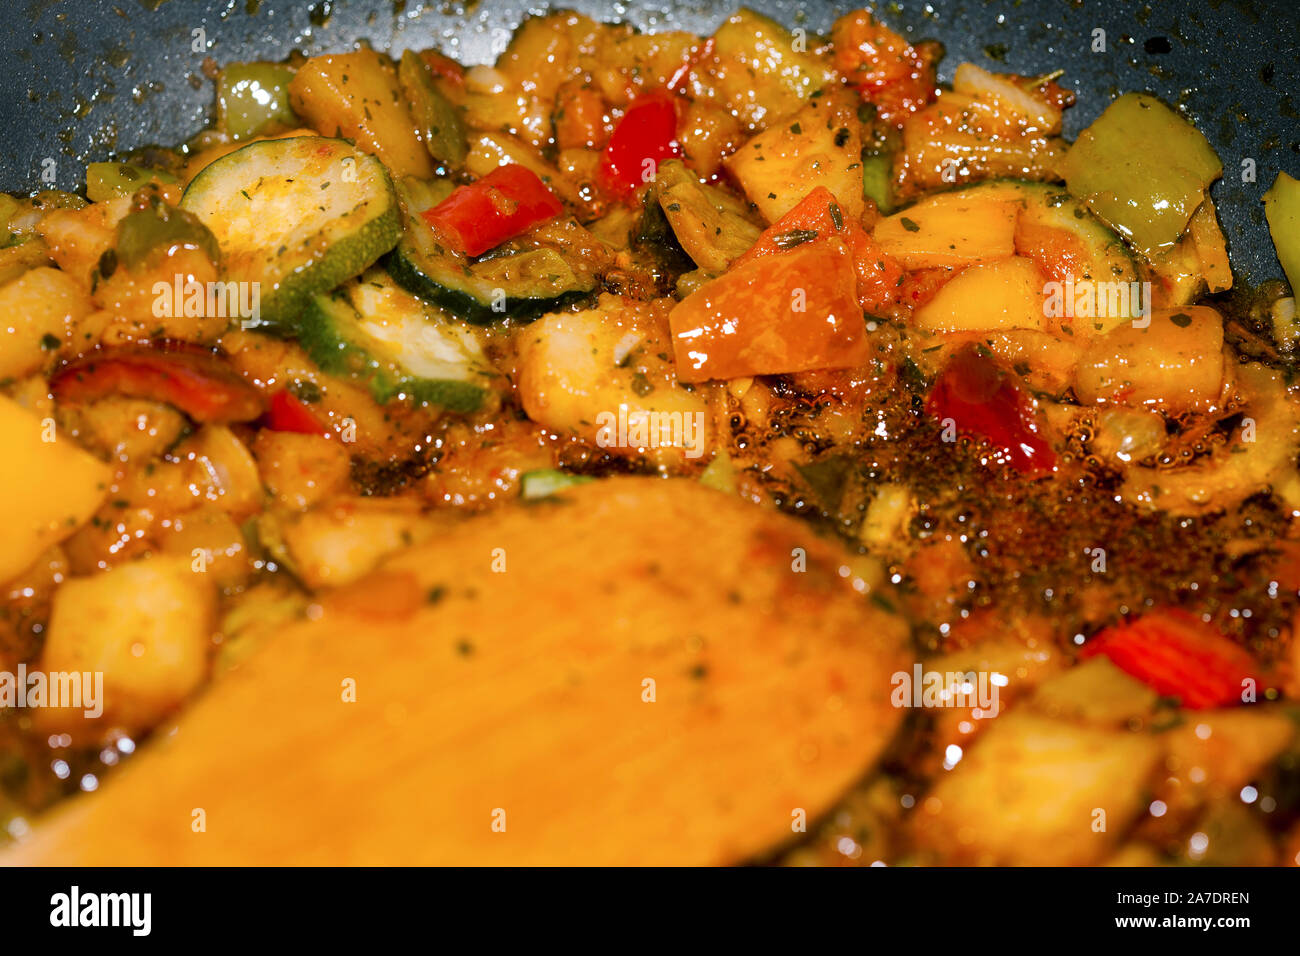 Ratatouille es un plato de verduras estofadas provenzal francés, originario de Niza. Receta ingredientes incluyen tomate, ajo, cebolla, calabacín, berenjena (e Foto de stock